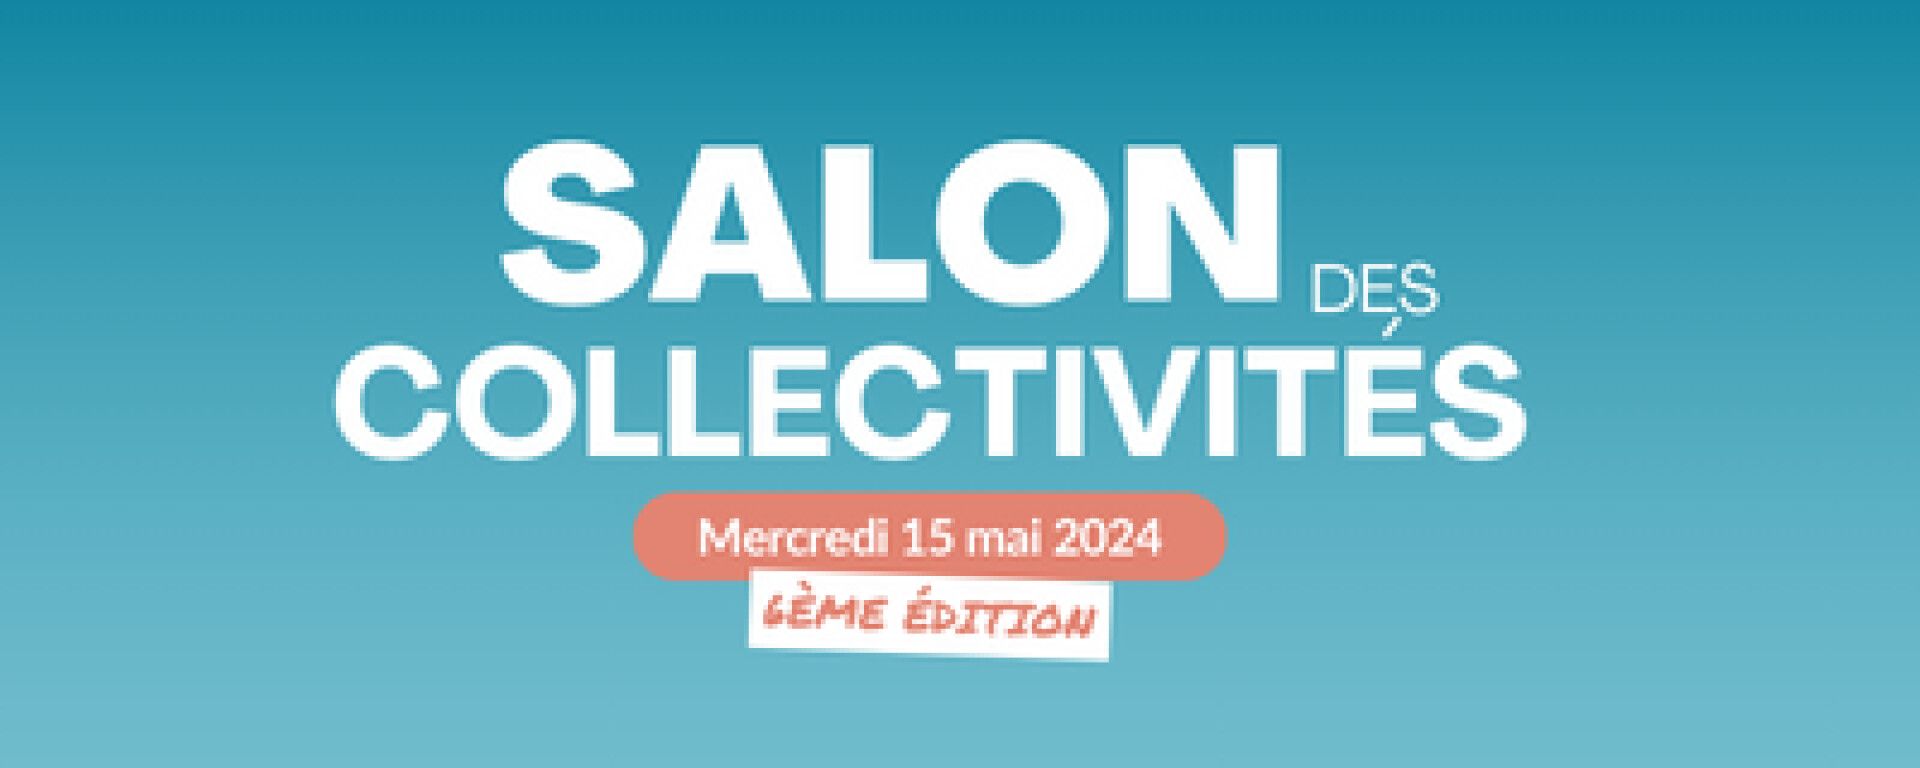 Ne manquez pas le Salon des Collectivités OCEADE Bretagne le 15 mai 2024 !